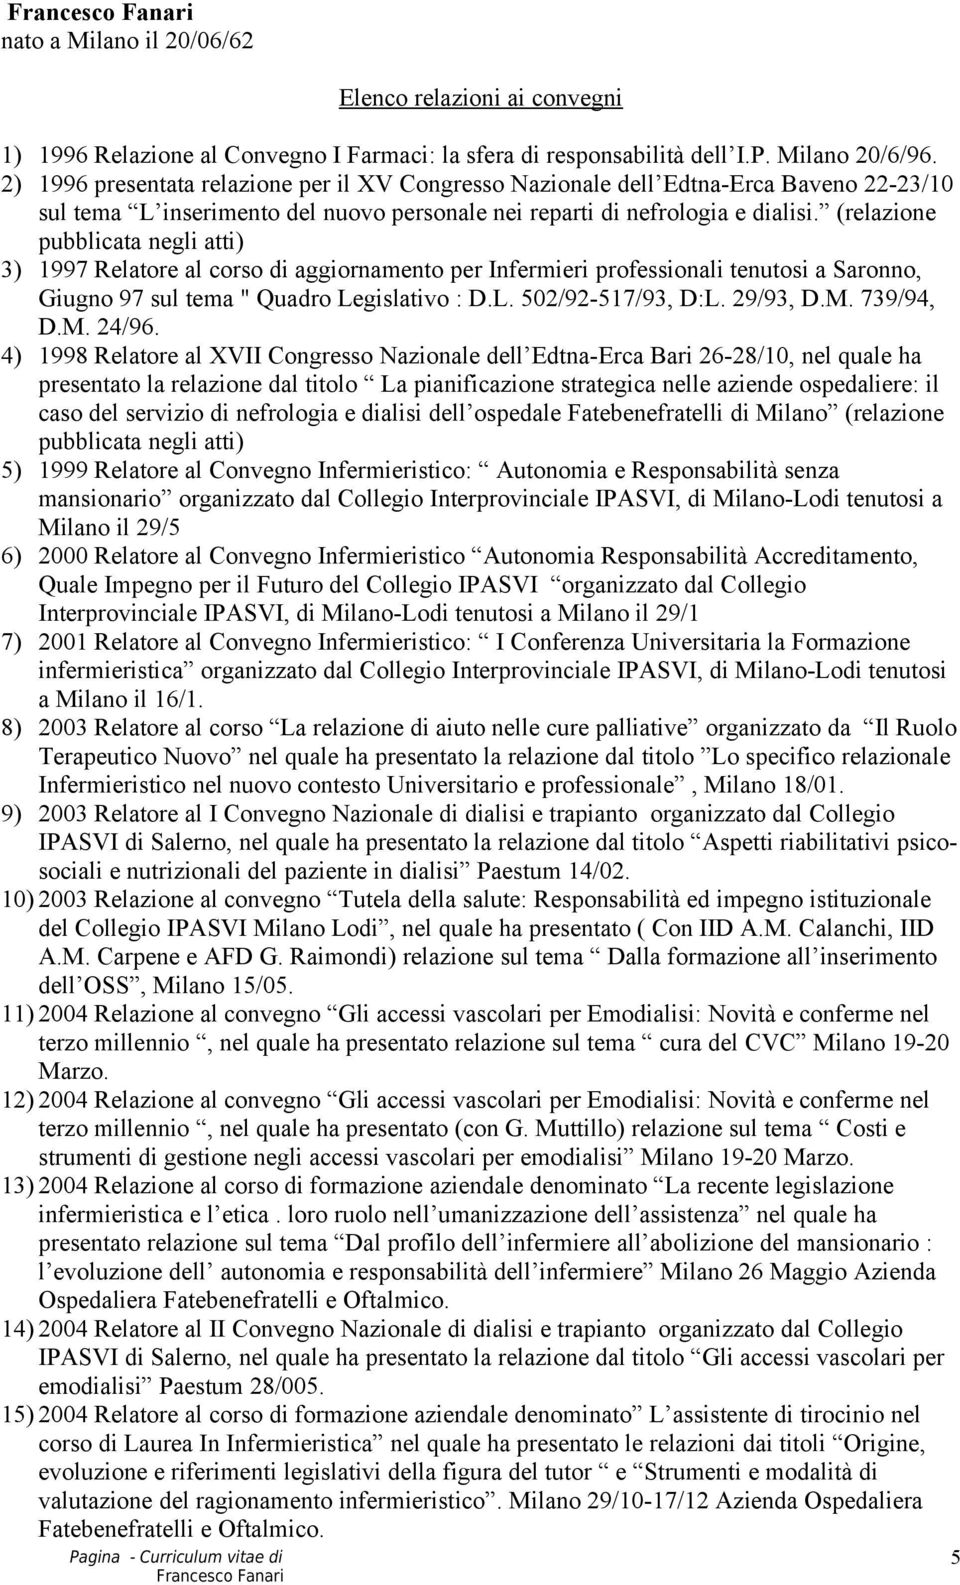 (relazione pubblicata negli atti) 3) 1997 Relatore al corso di aggiornamento per Infermieri professionali tenutosi a Saronno, Giugno 97 sul tema " Quadro Legislativo : D.L. 502/92-517/93, D:L.